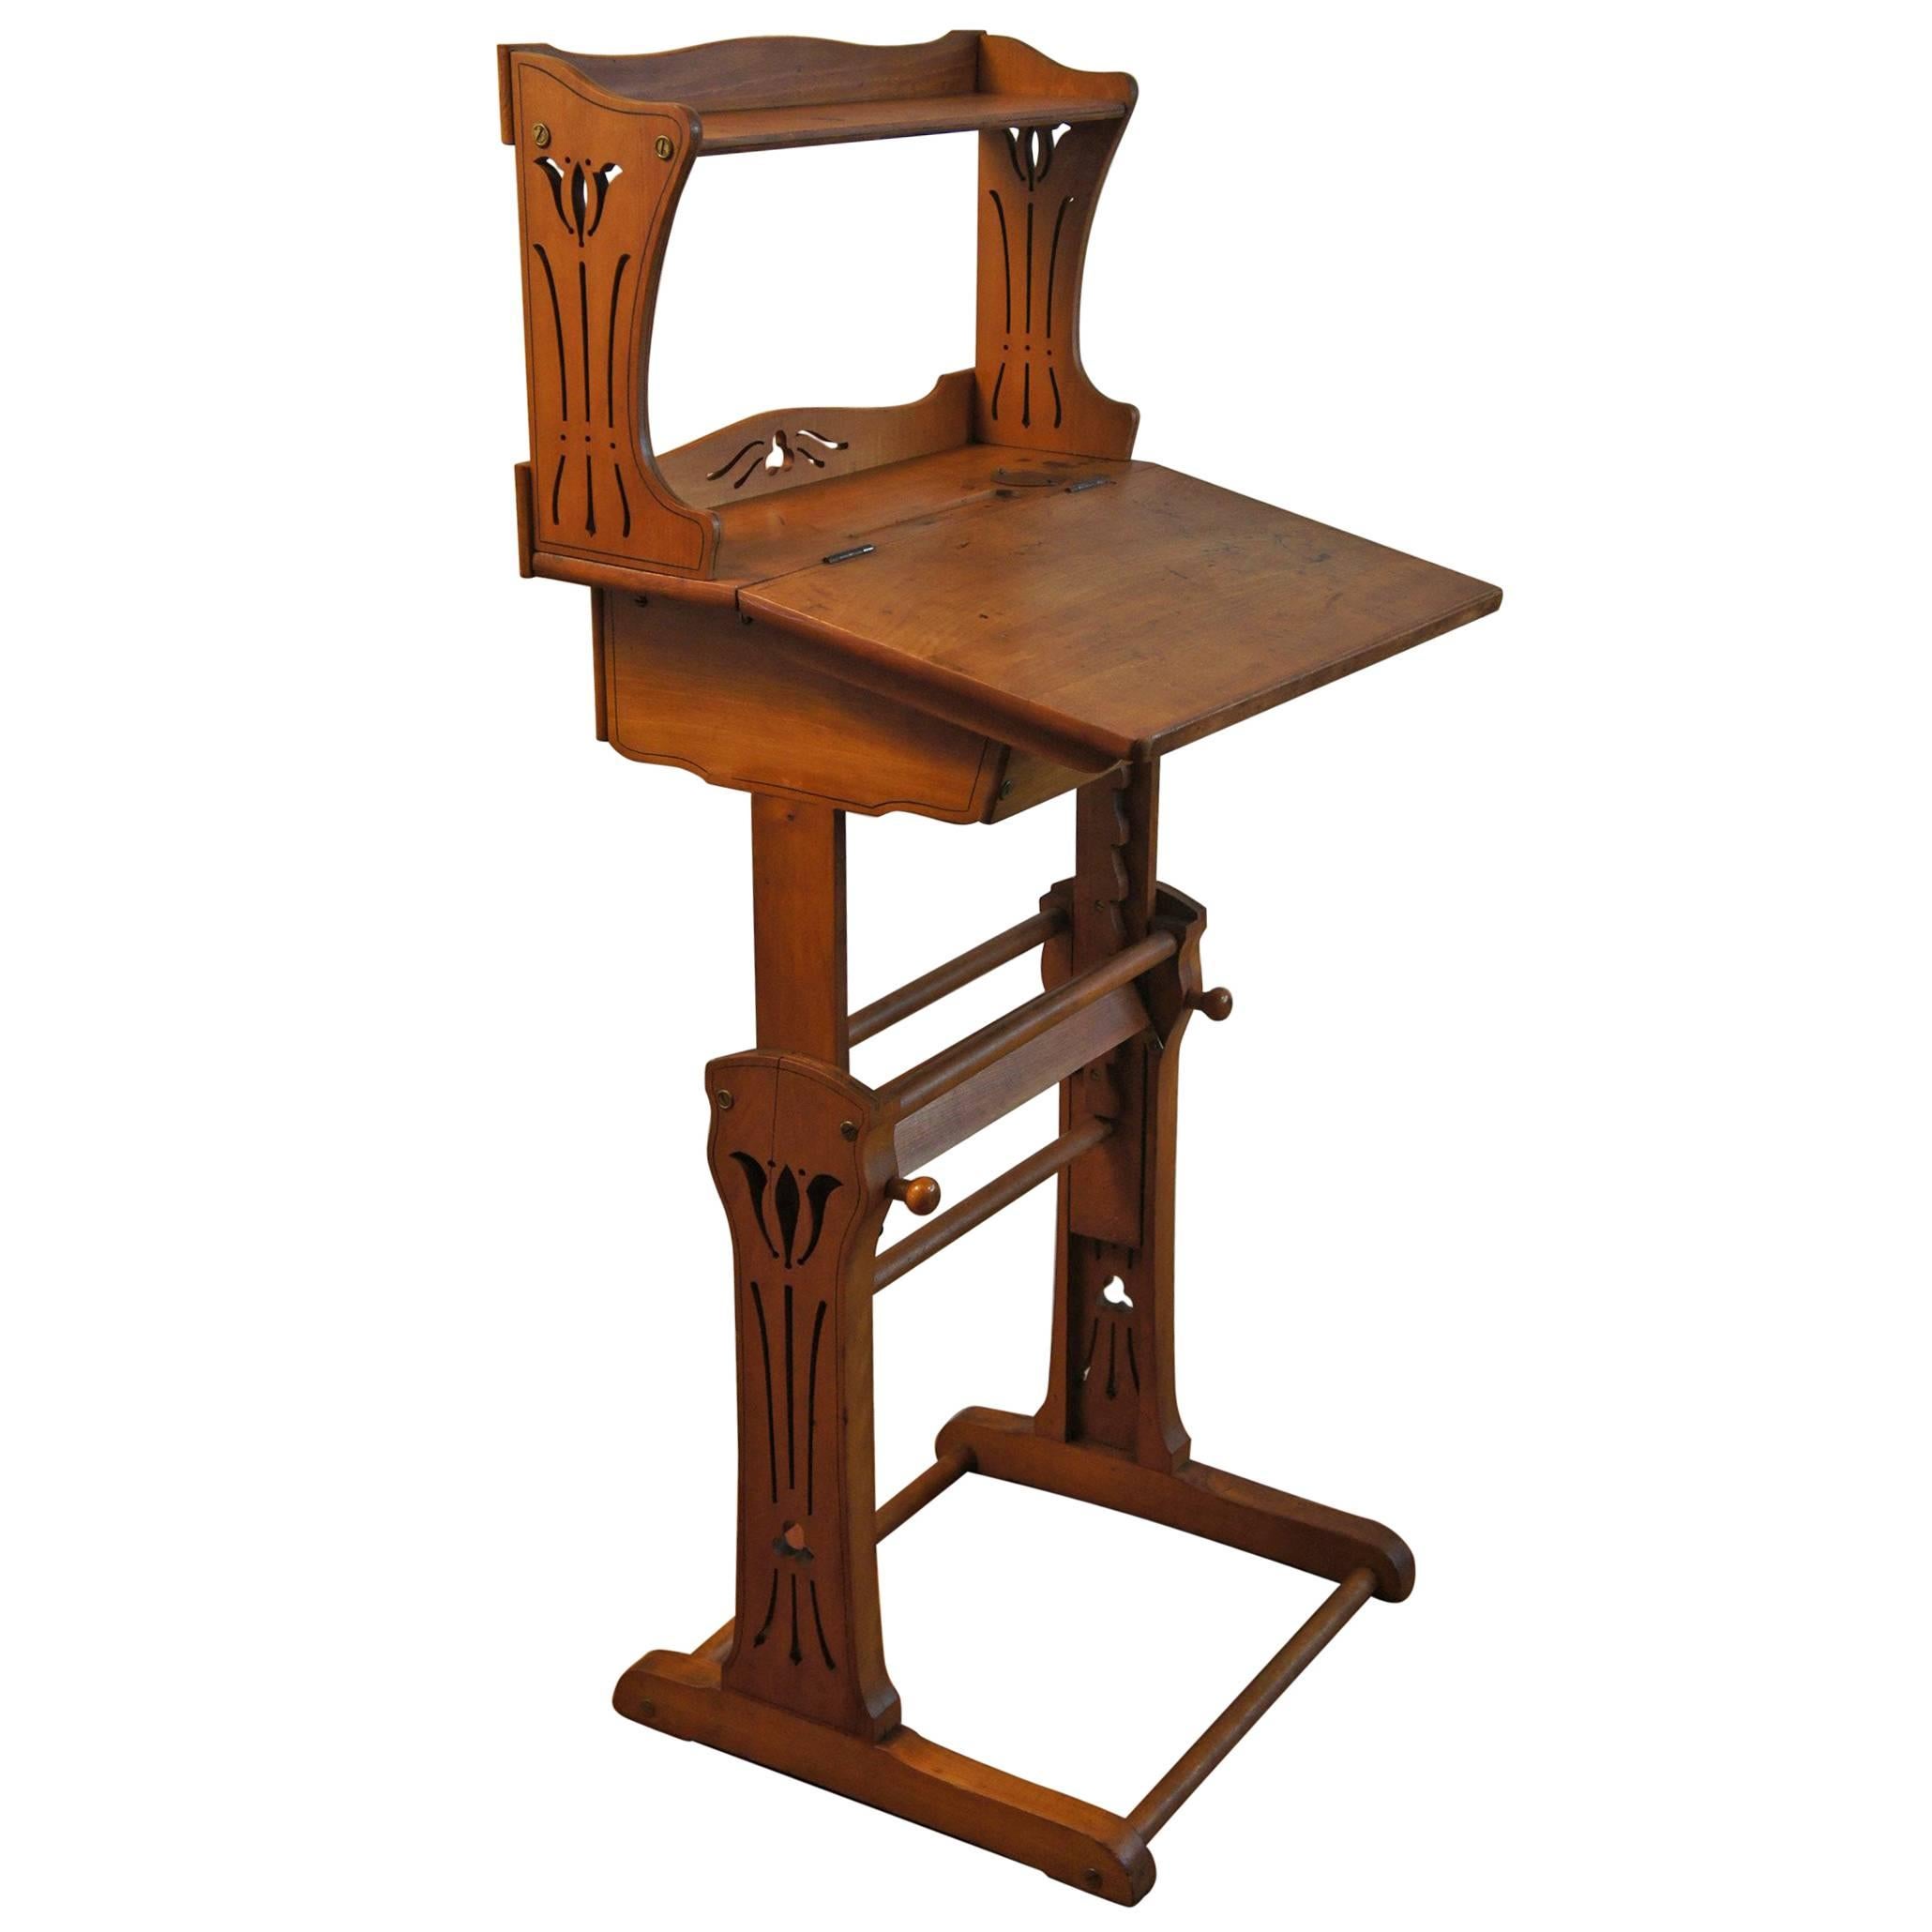 Antique Adjustable Jugendstil Working Table with Inkwell for Craftsman & Artists